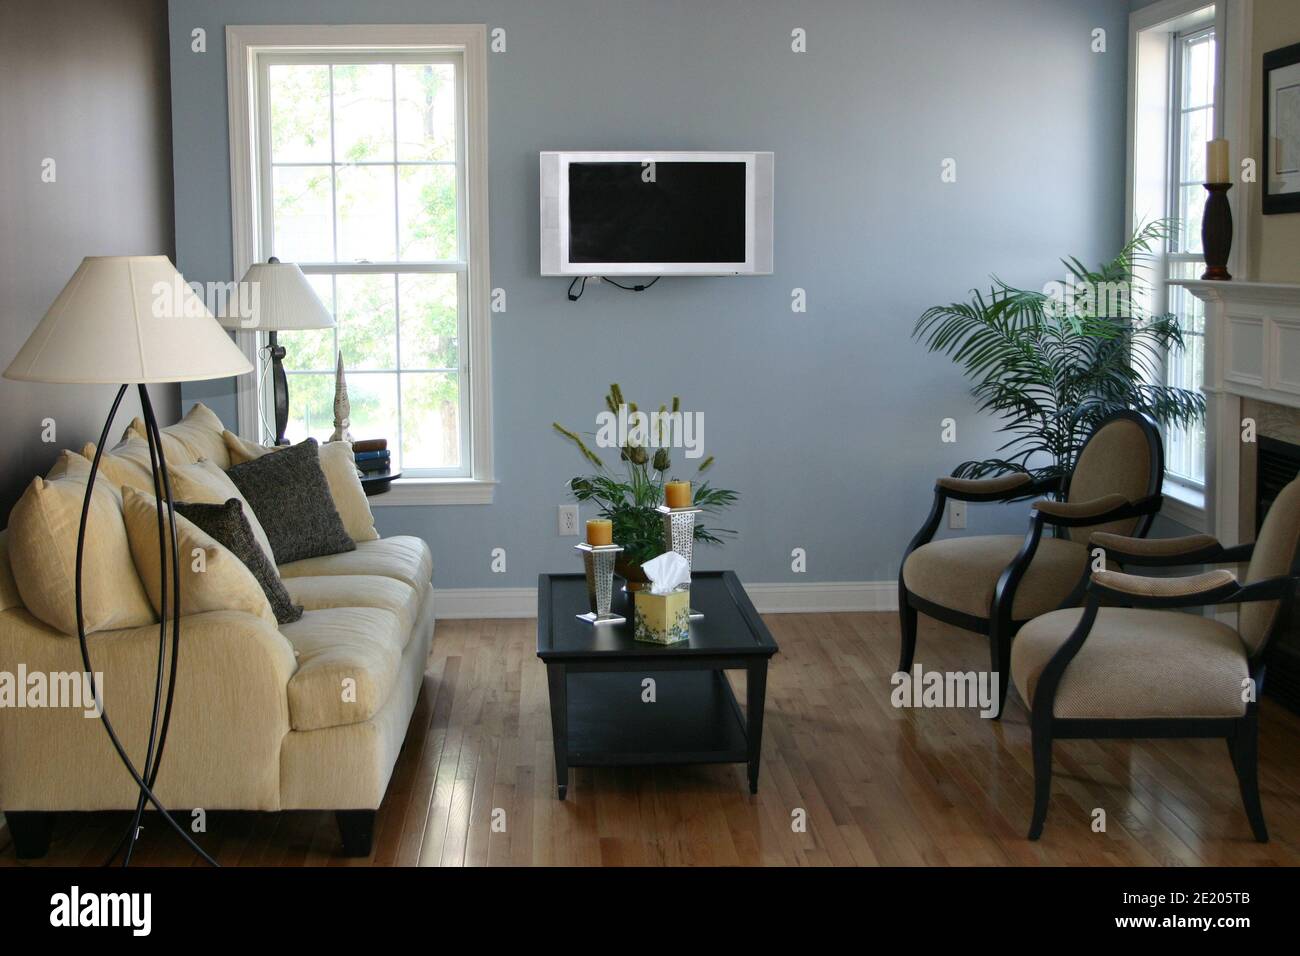 Elegant modern living room ready for entertaining Stock Photo